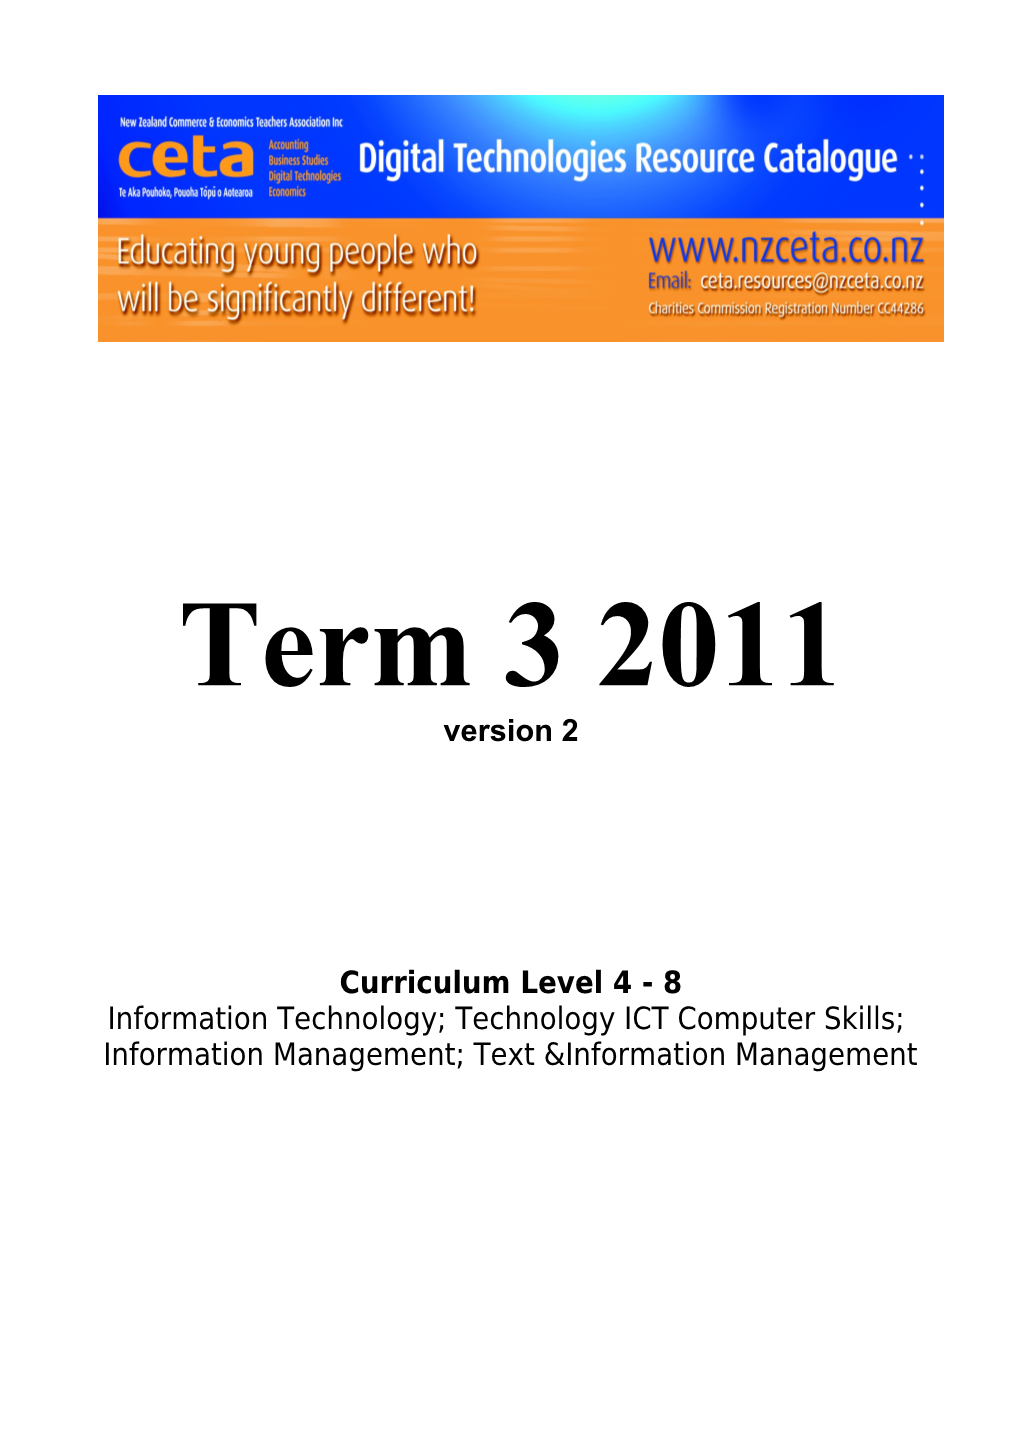 Curriculum Level 4 - 8